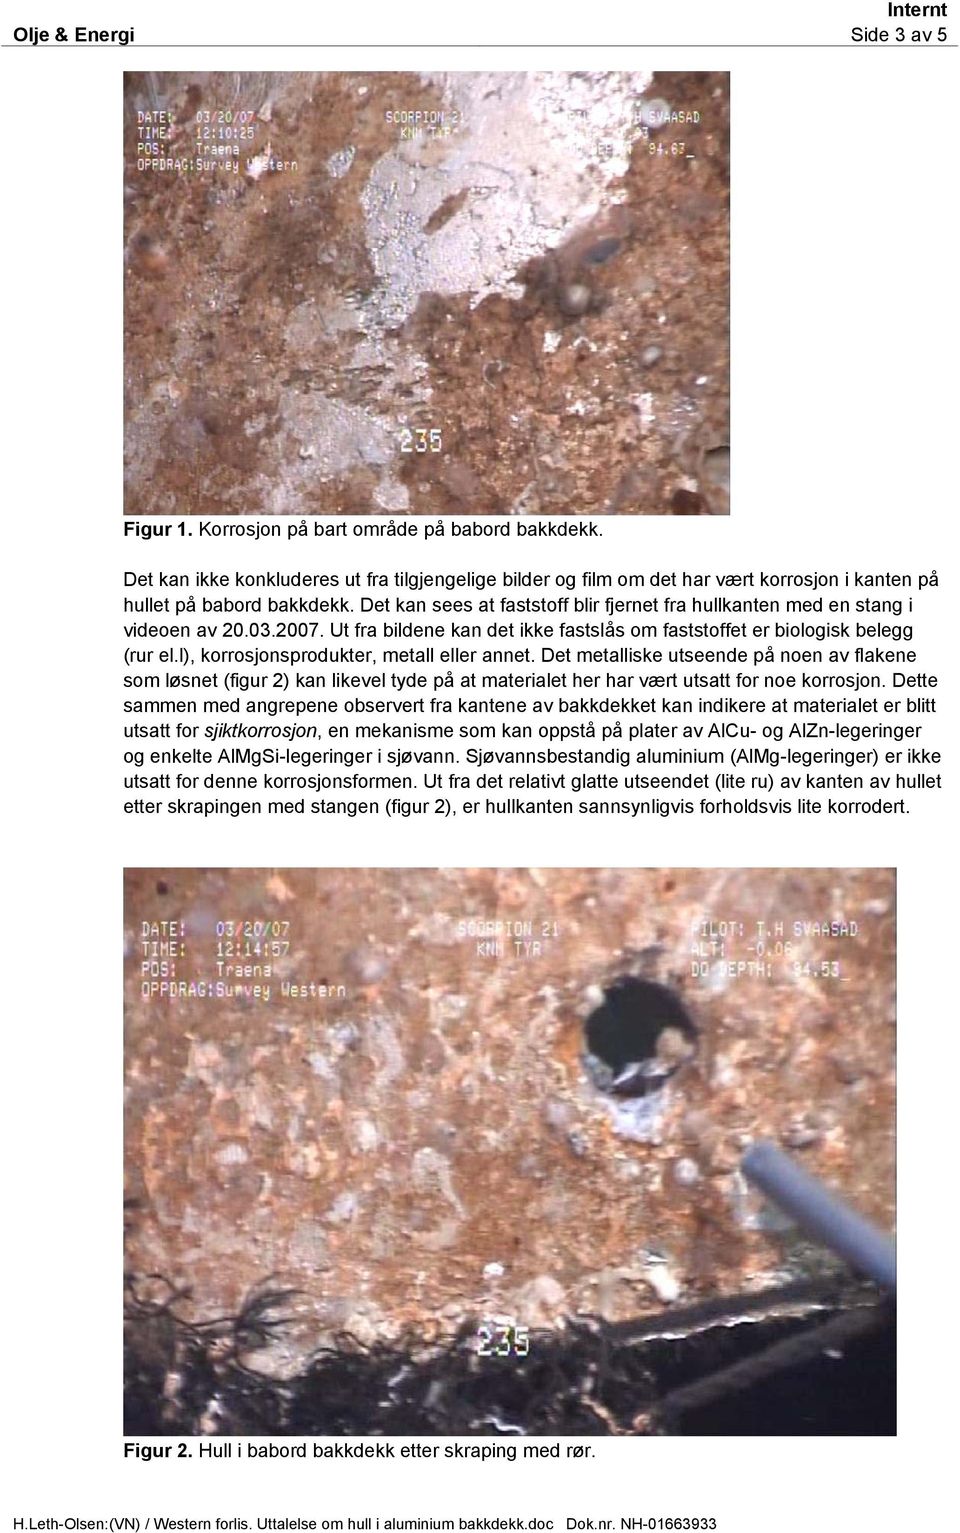 Det kan sees at faststoff blir fjernet fra hullkanten med en stang i videoen av 20.03.2007. Ut fra bildene kan det ikke fastslås om faststoffet er biologisk belegg (rur el.